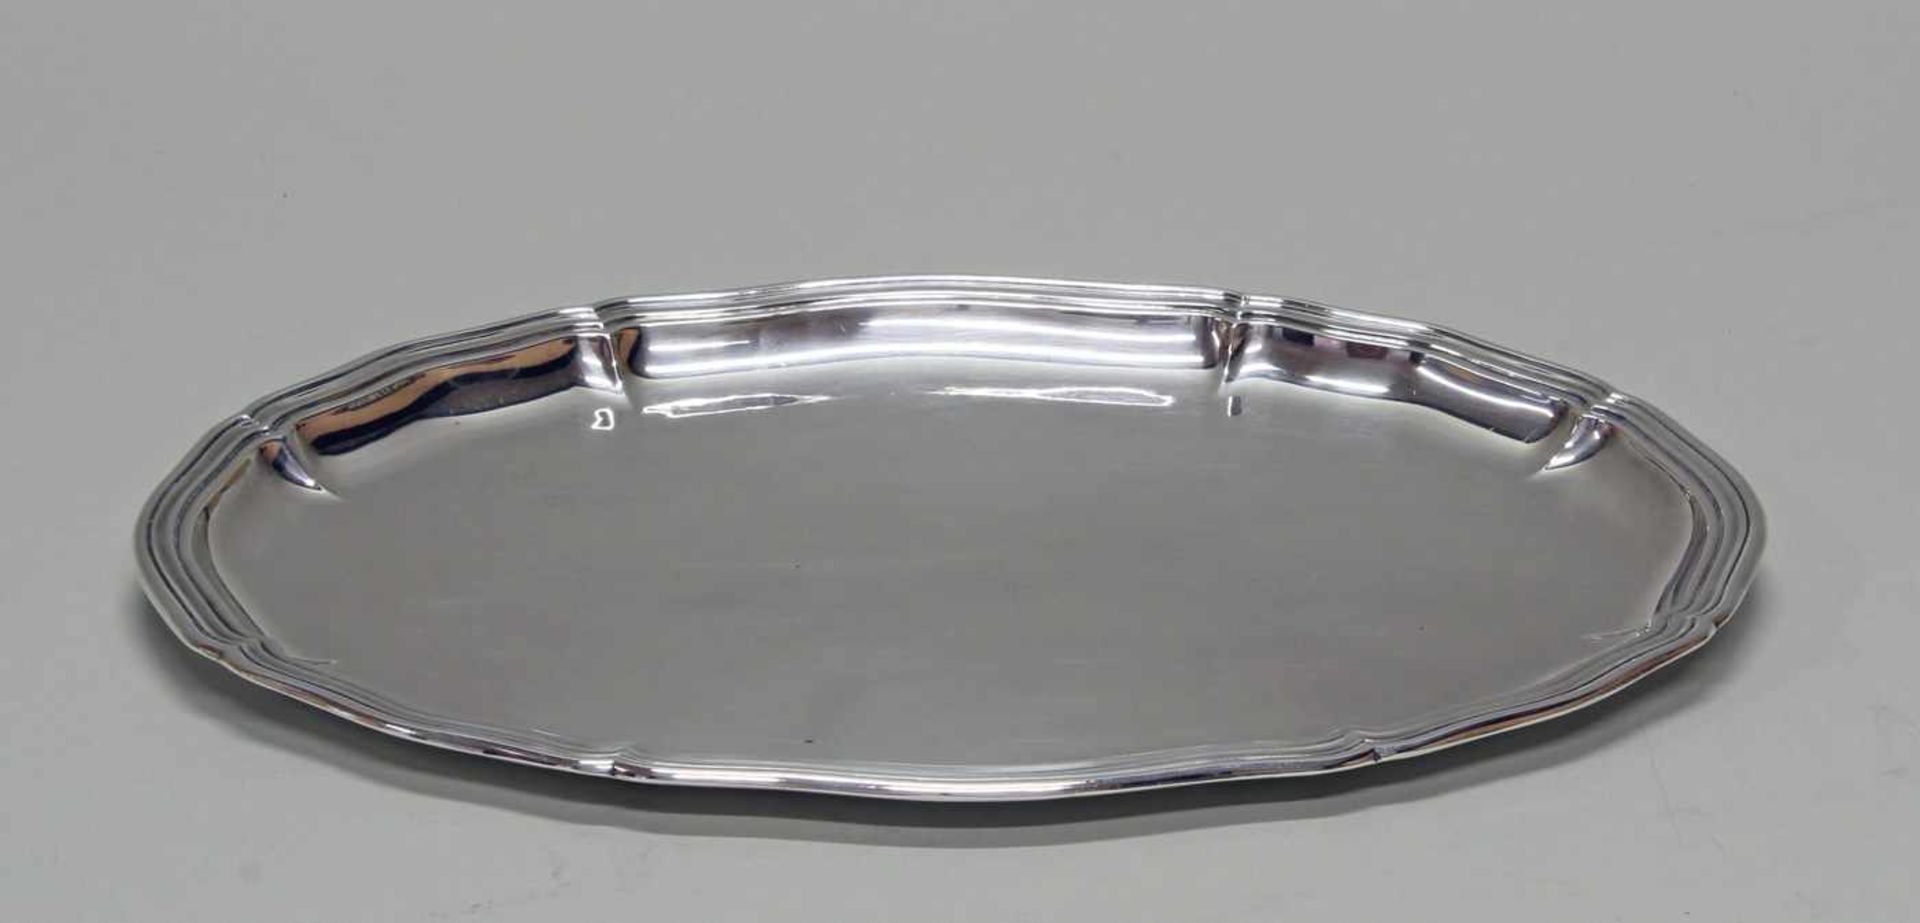 Vorlegeplatte, Silber 800, Gbr. Kühn, oval, passig-geschweifter Profilrand, umseitig datierte - Bild 2 aus 4